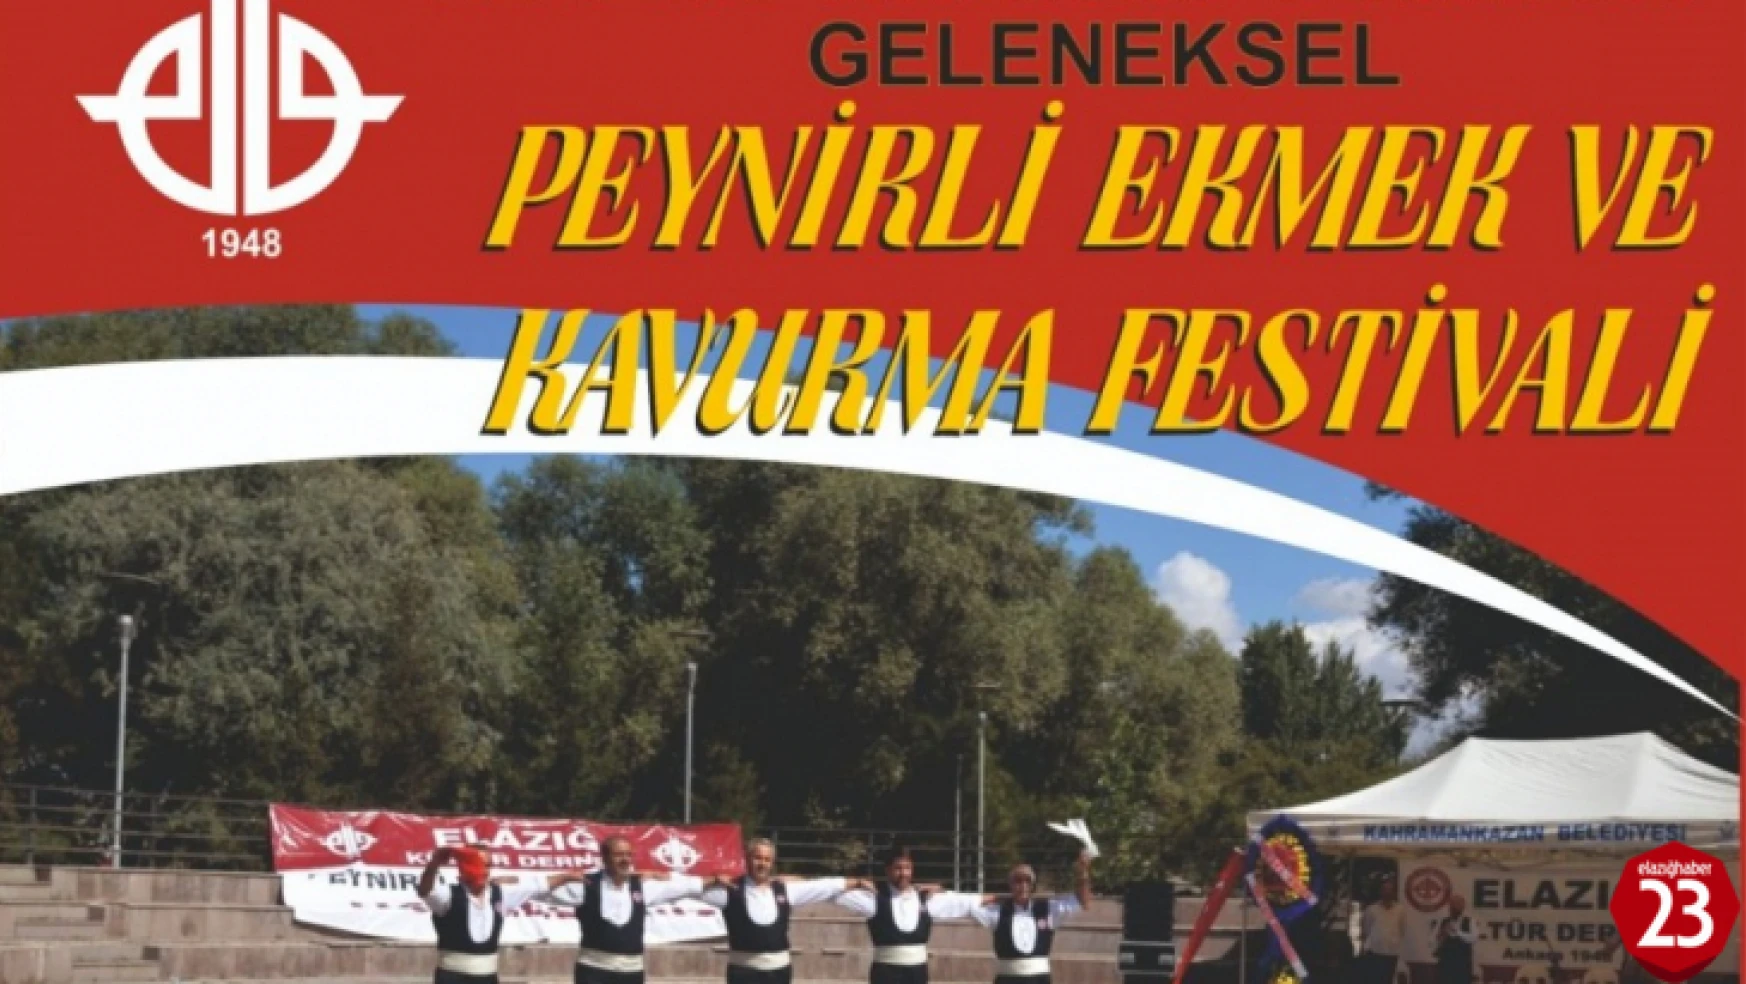 Ankara'da, Peynirli Ekmek ve Kavurma Festivali Düzenlenecek